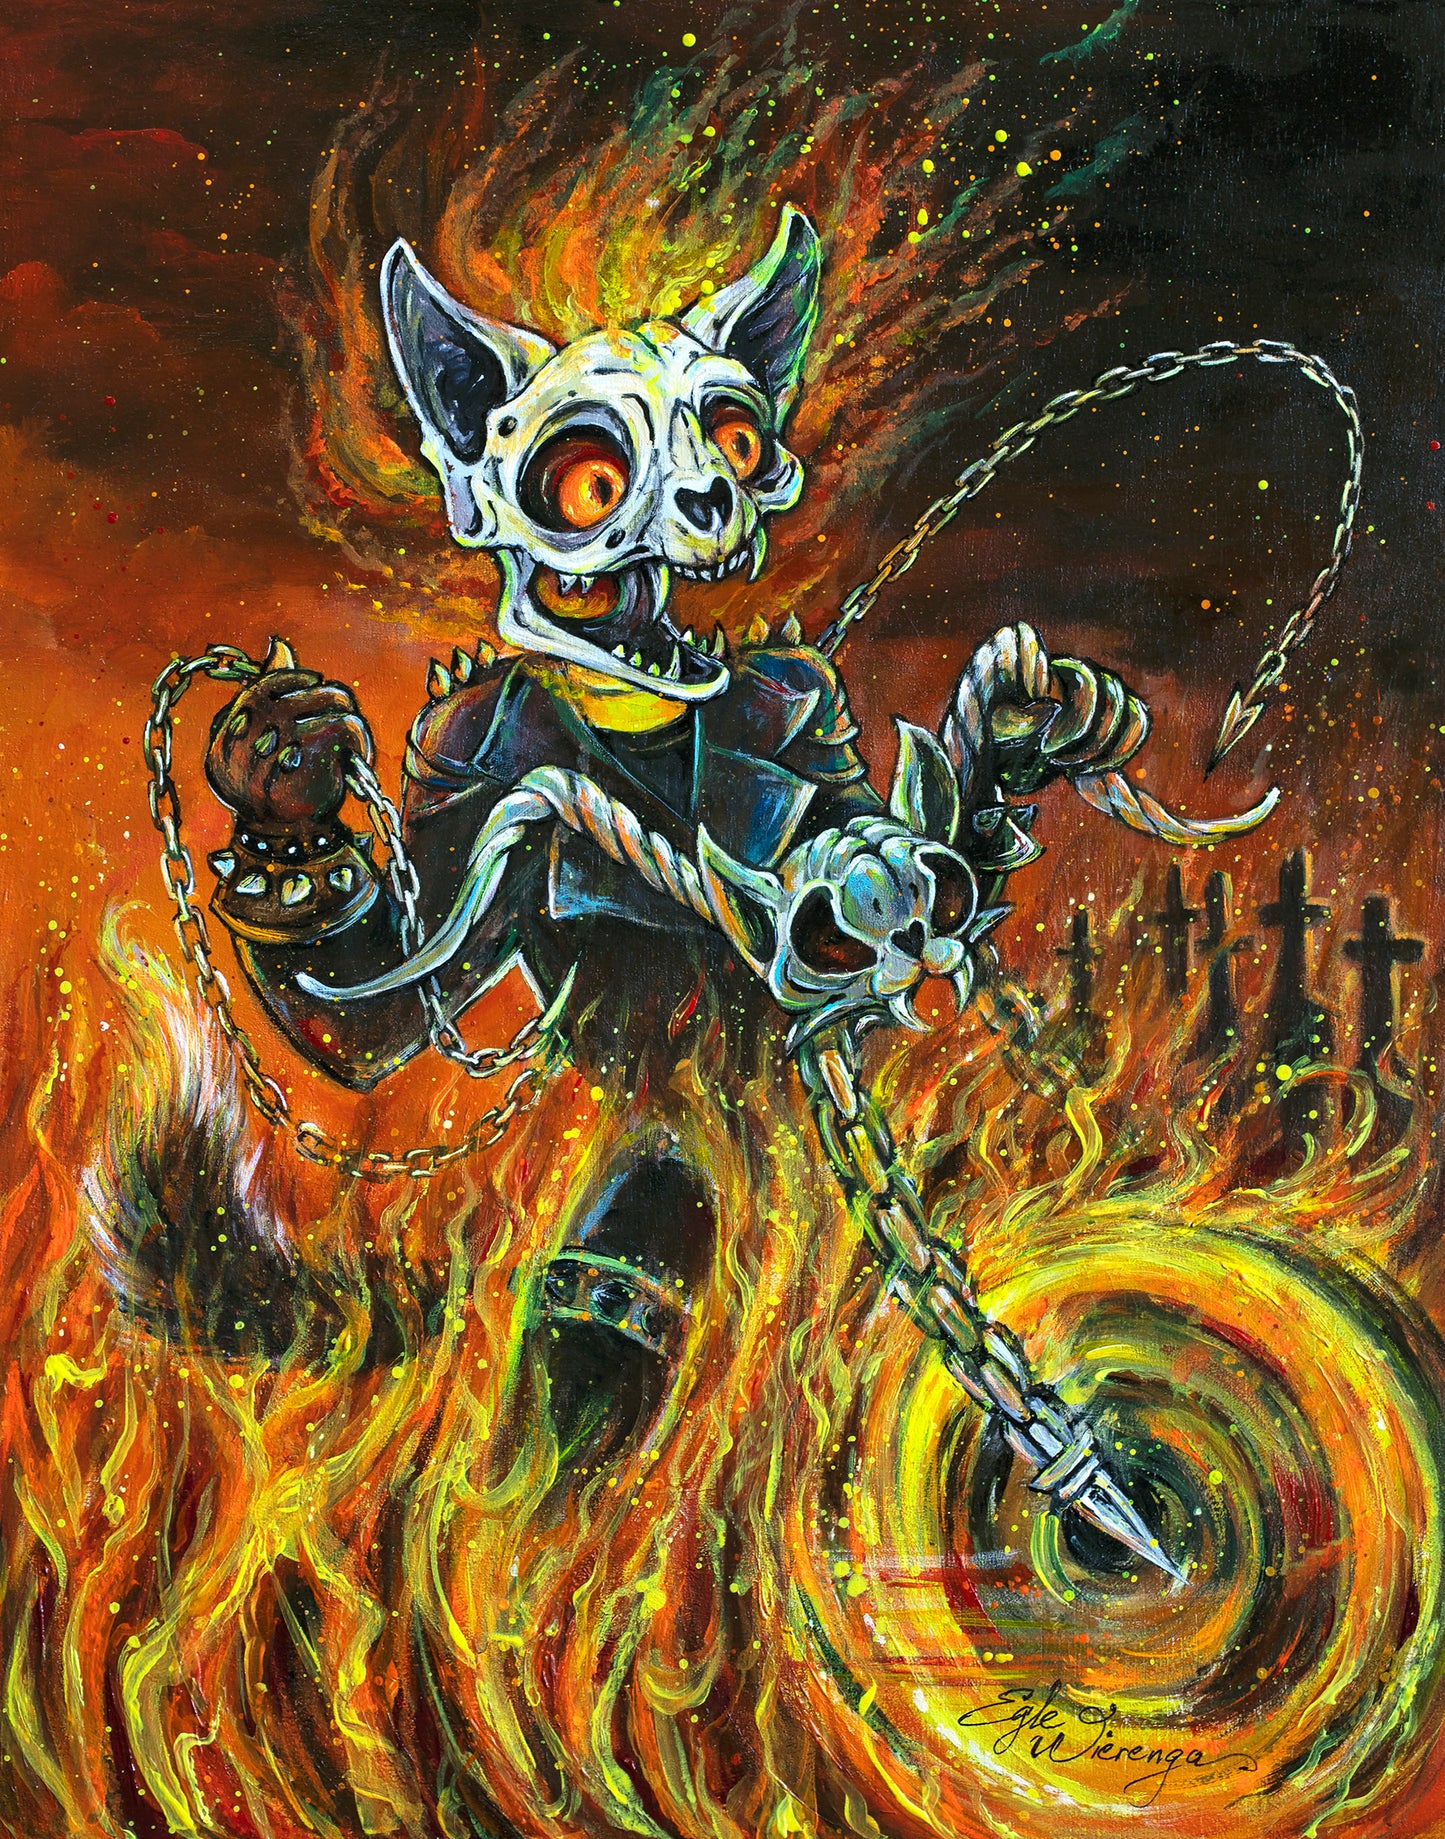 Original Painting "Kitty Blaze"